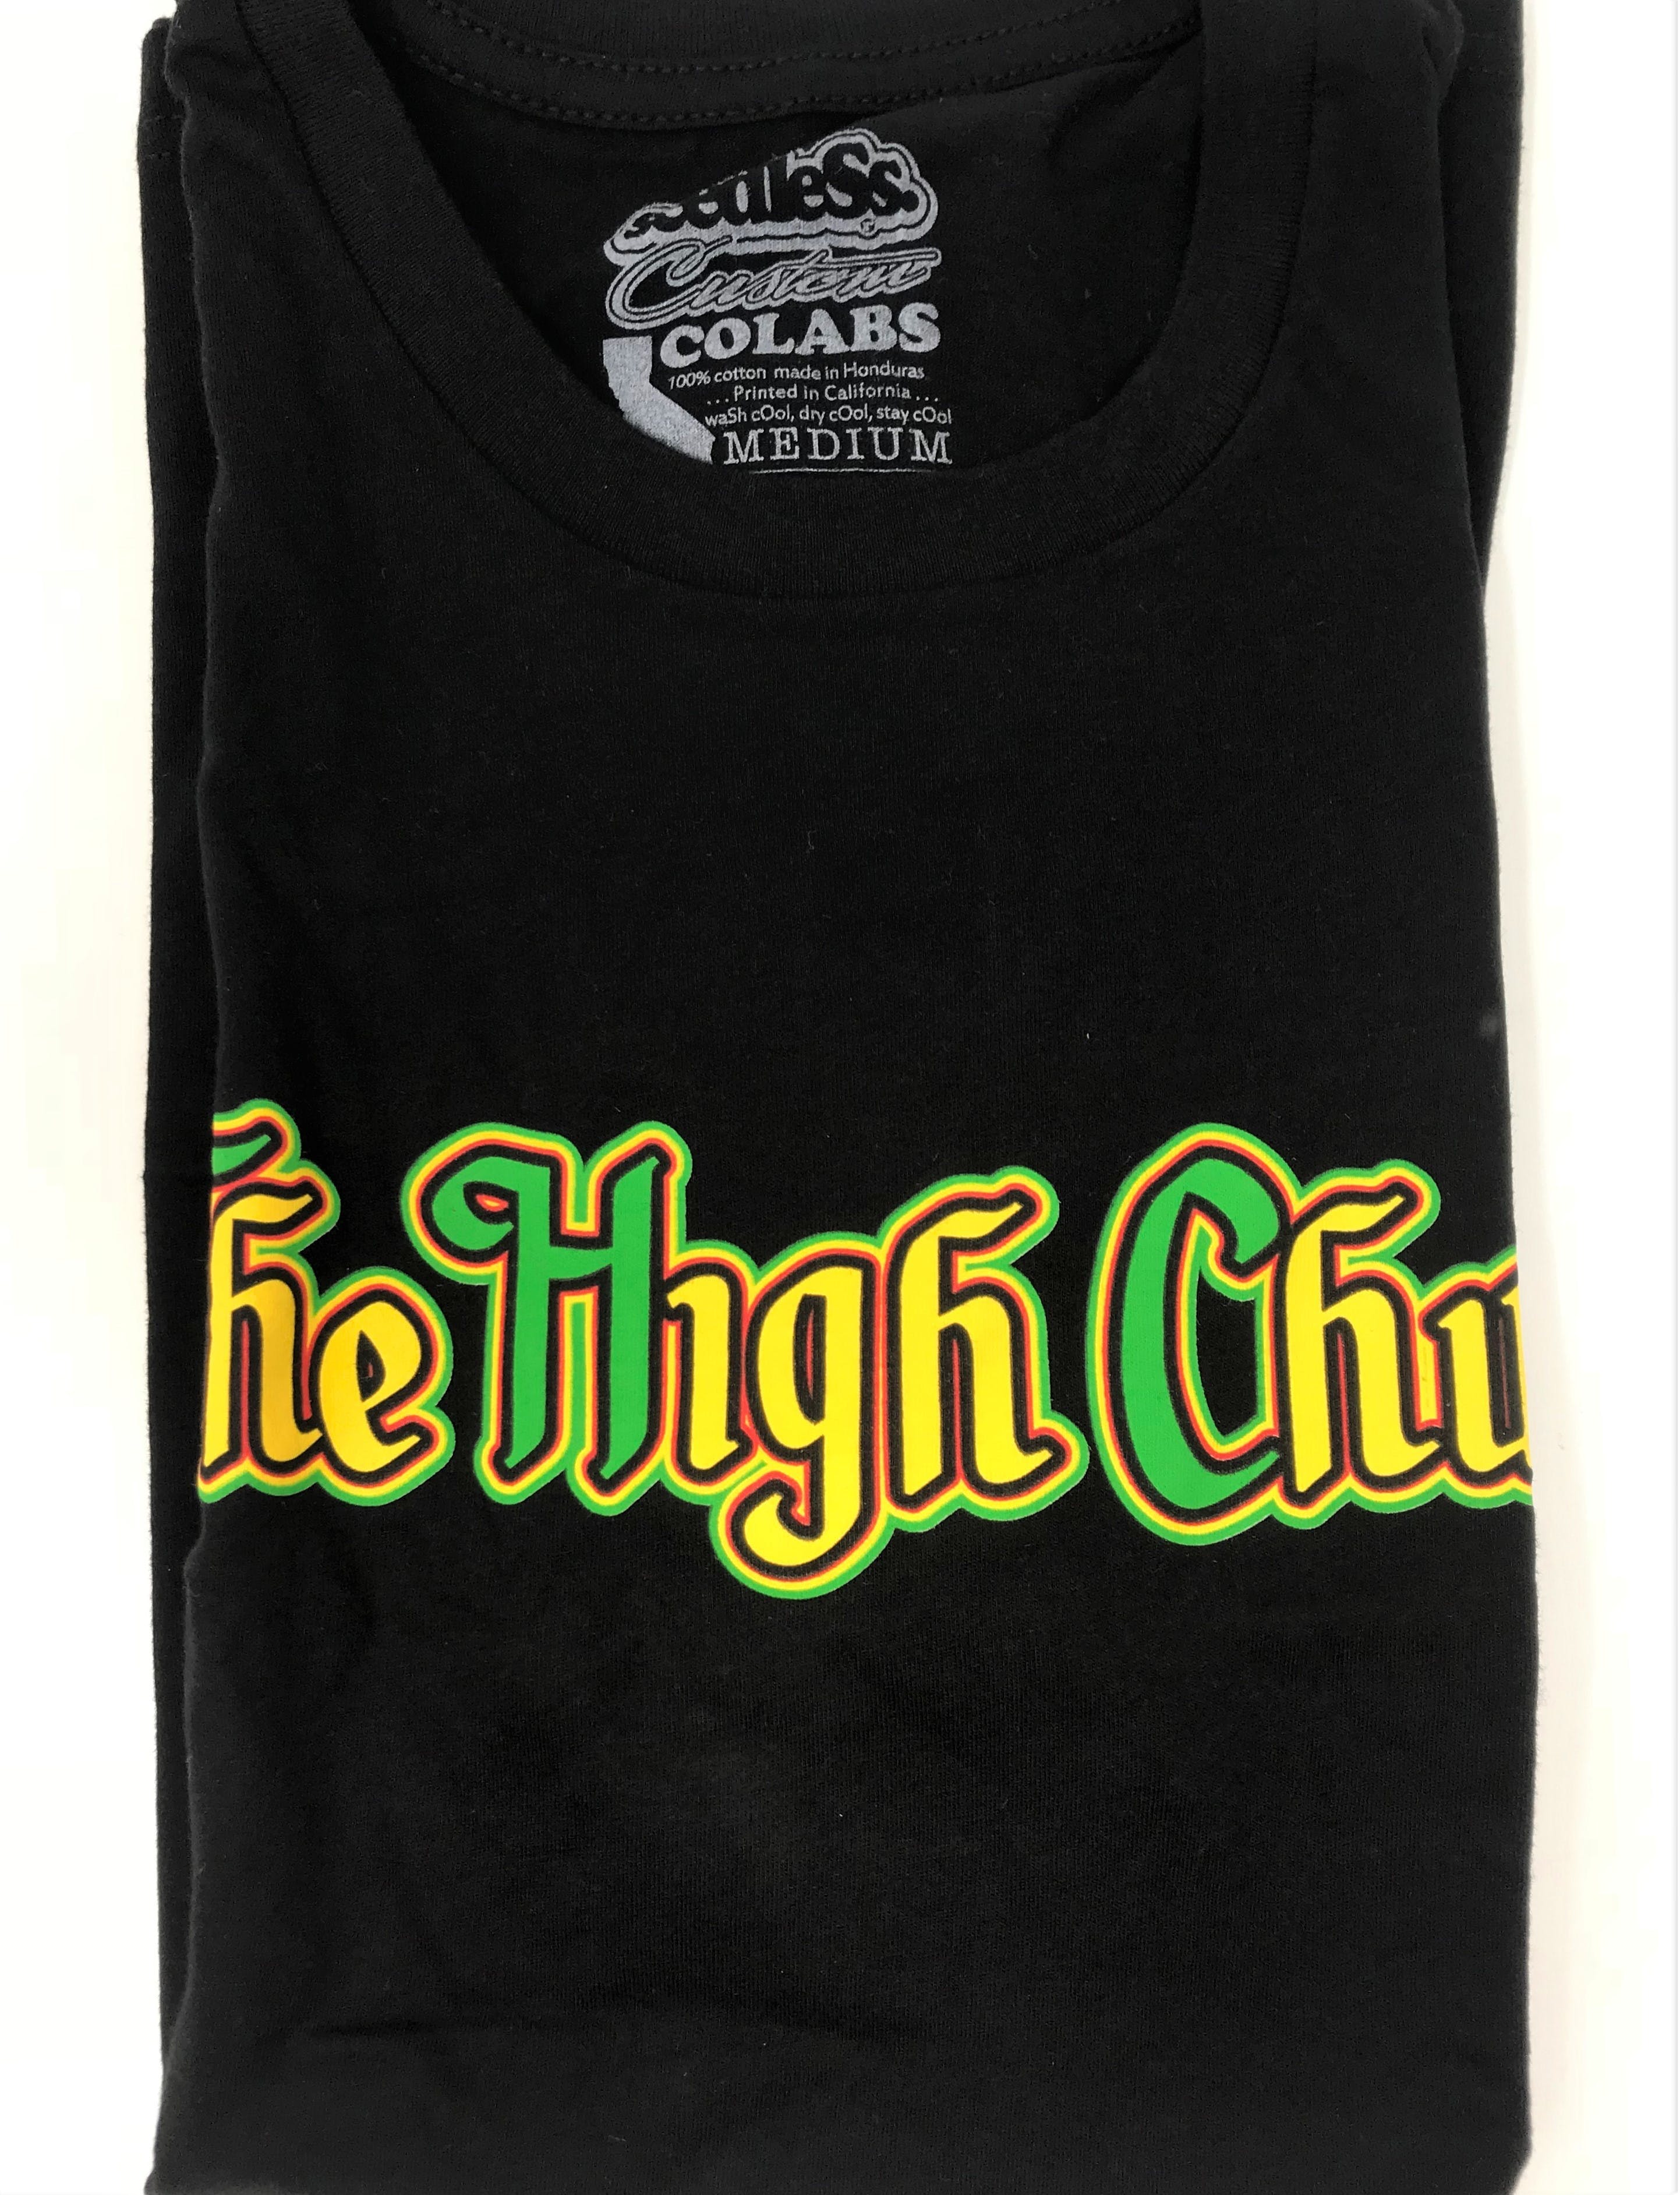 gear-the-high-church-rastablack-t-shirt